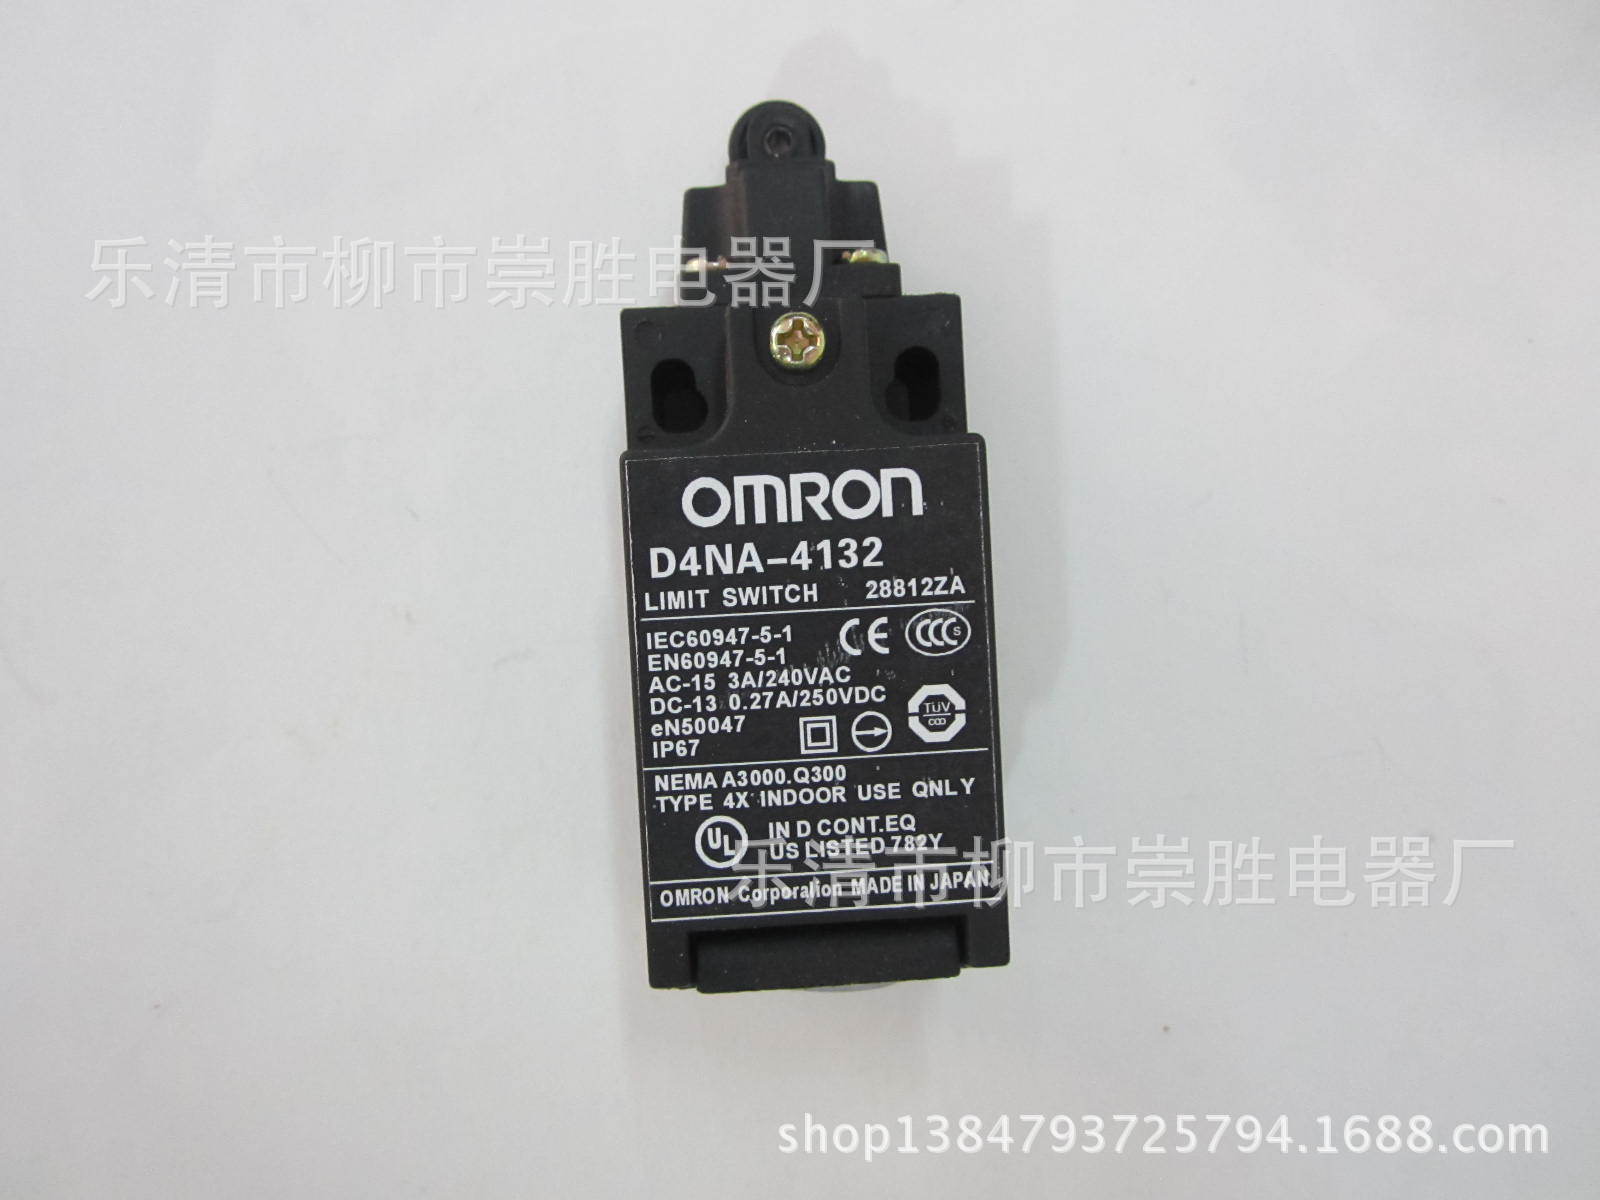 特价供应:omron/欧姆龙行程开关d4na-4132